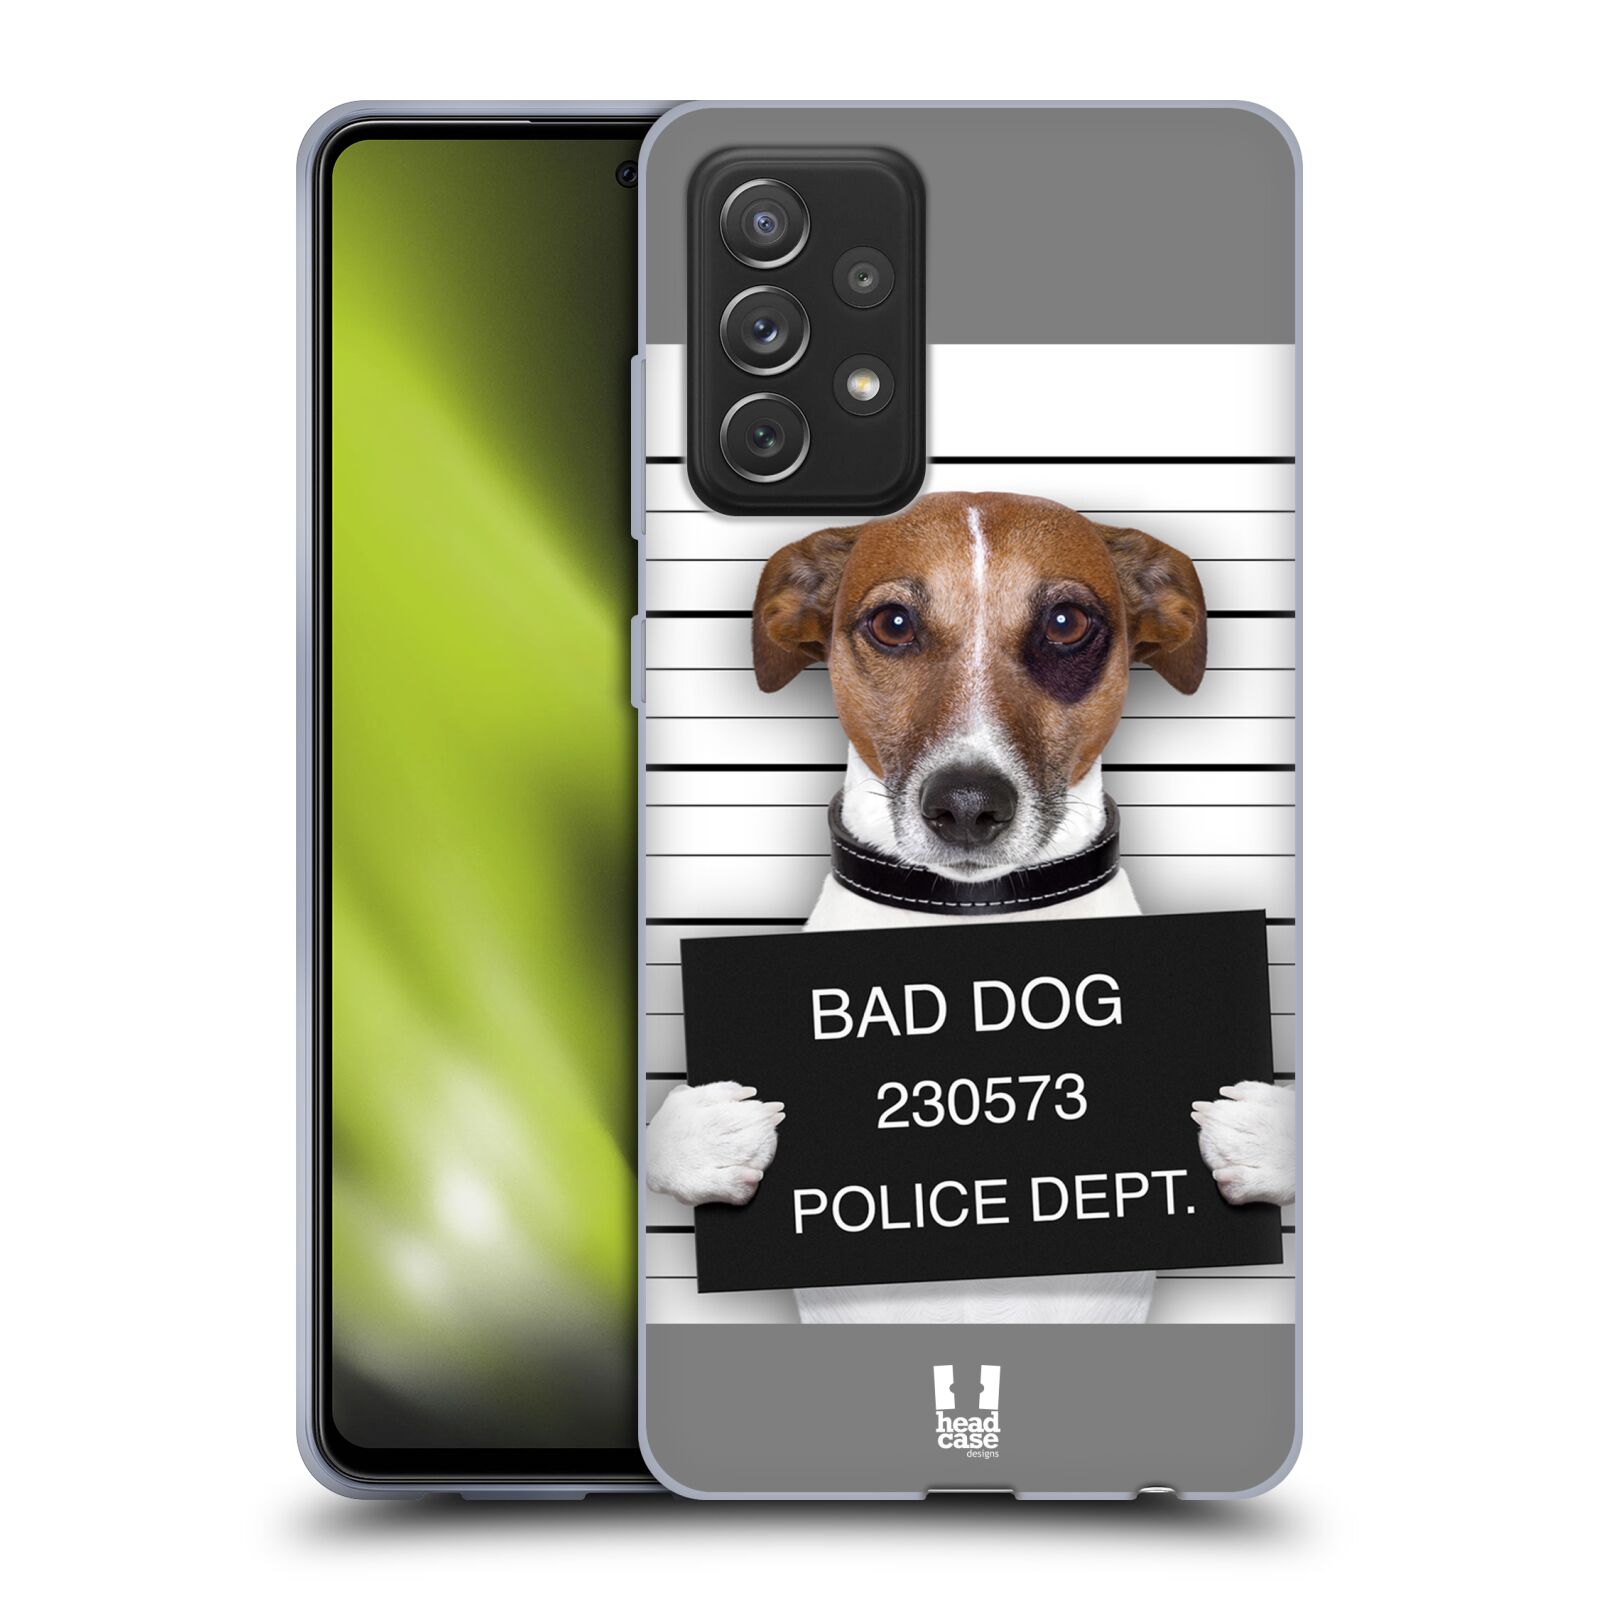 Plastový obal HEAD CASE na mobil Samsung Galaxy A72 / A72 5G vzor Legrační zvířátka pejsek na policii